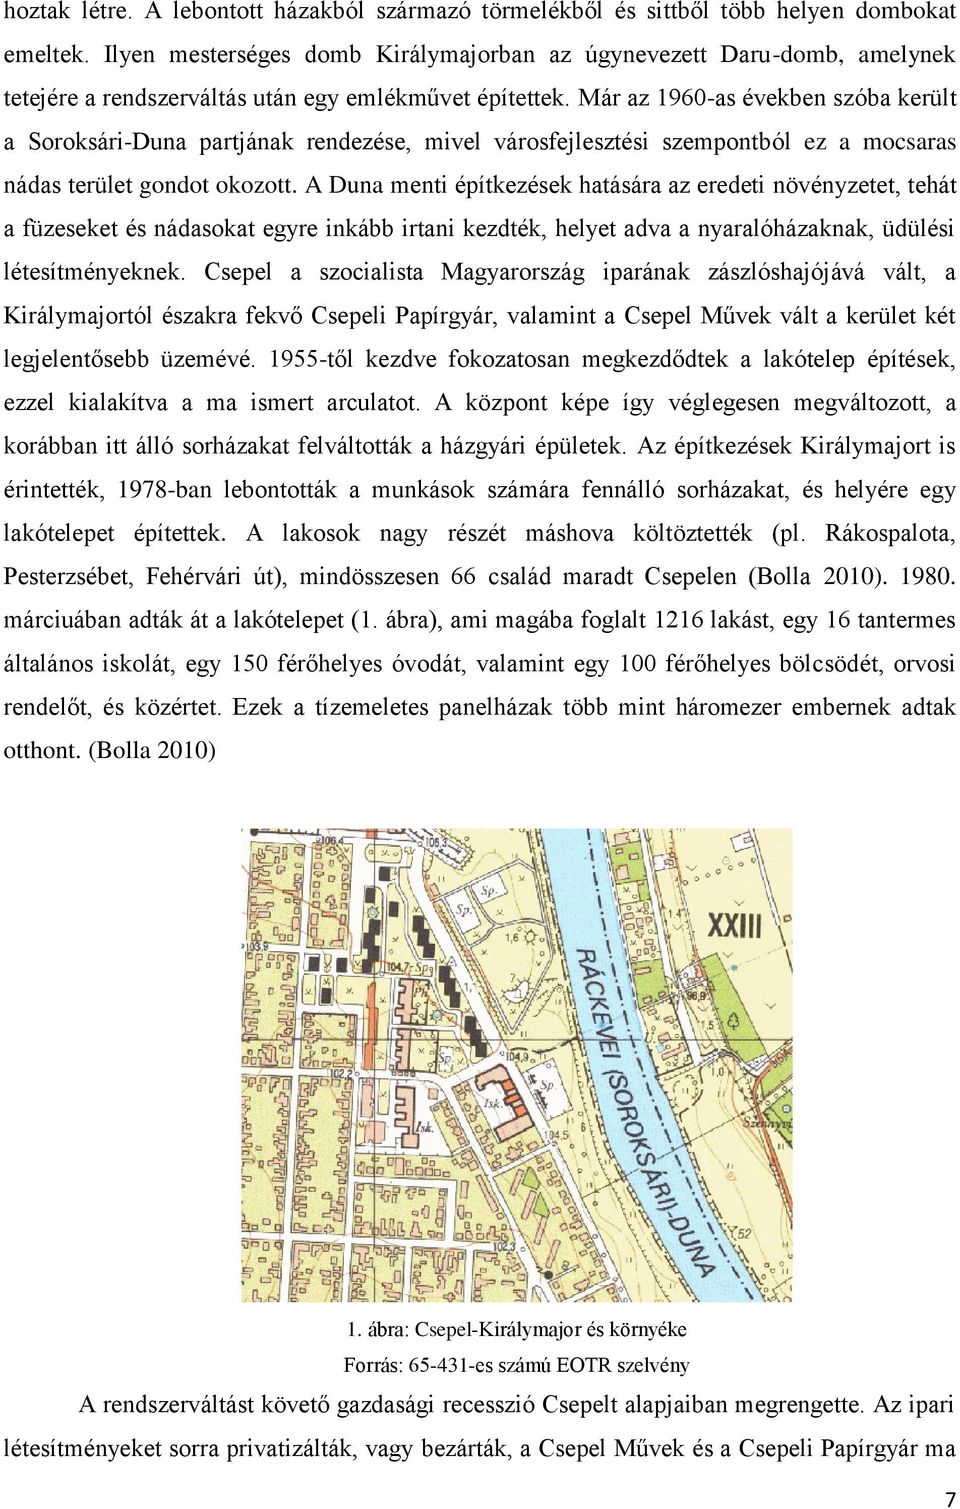 Már az 1960-as években szóba került a Soroksári-Duna partjának rendezése, mivel városfejlesztési szempontból ez a mocsaras nádas terület gondot okozott.